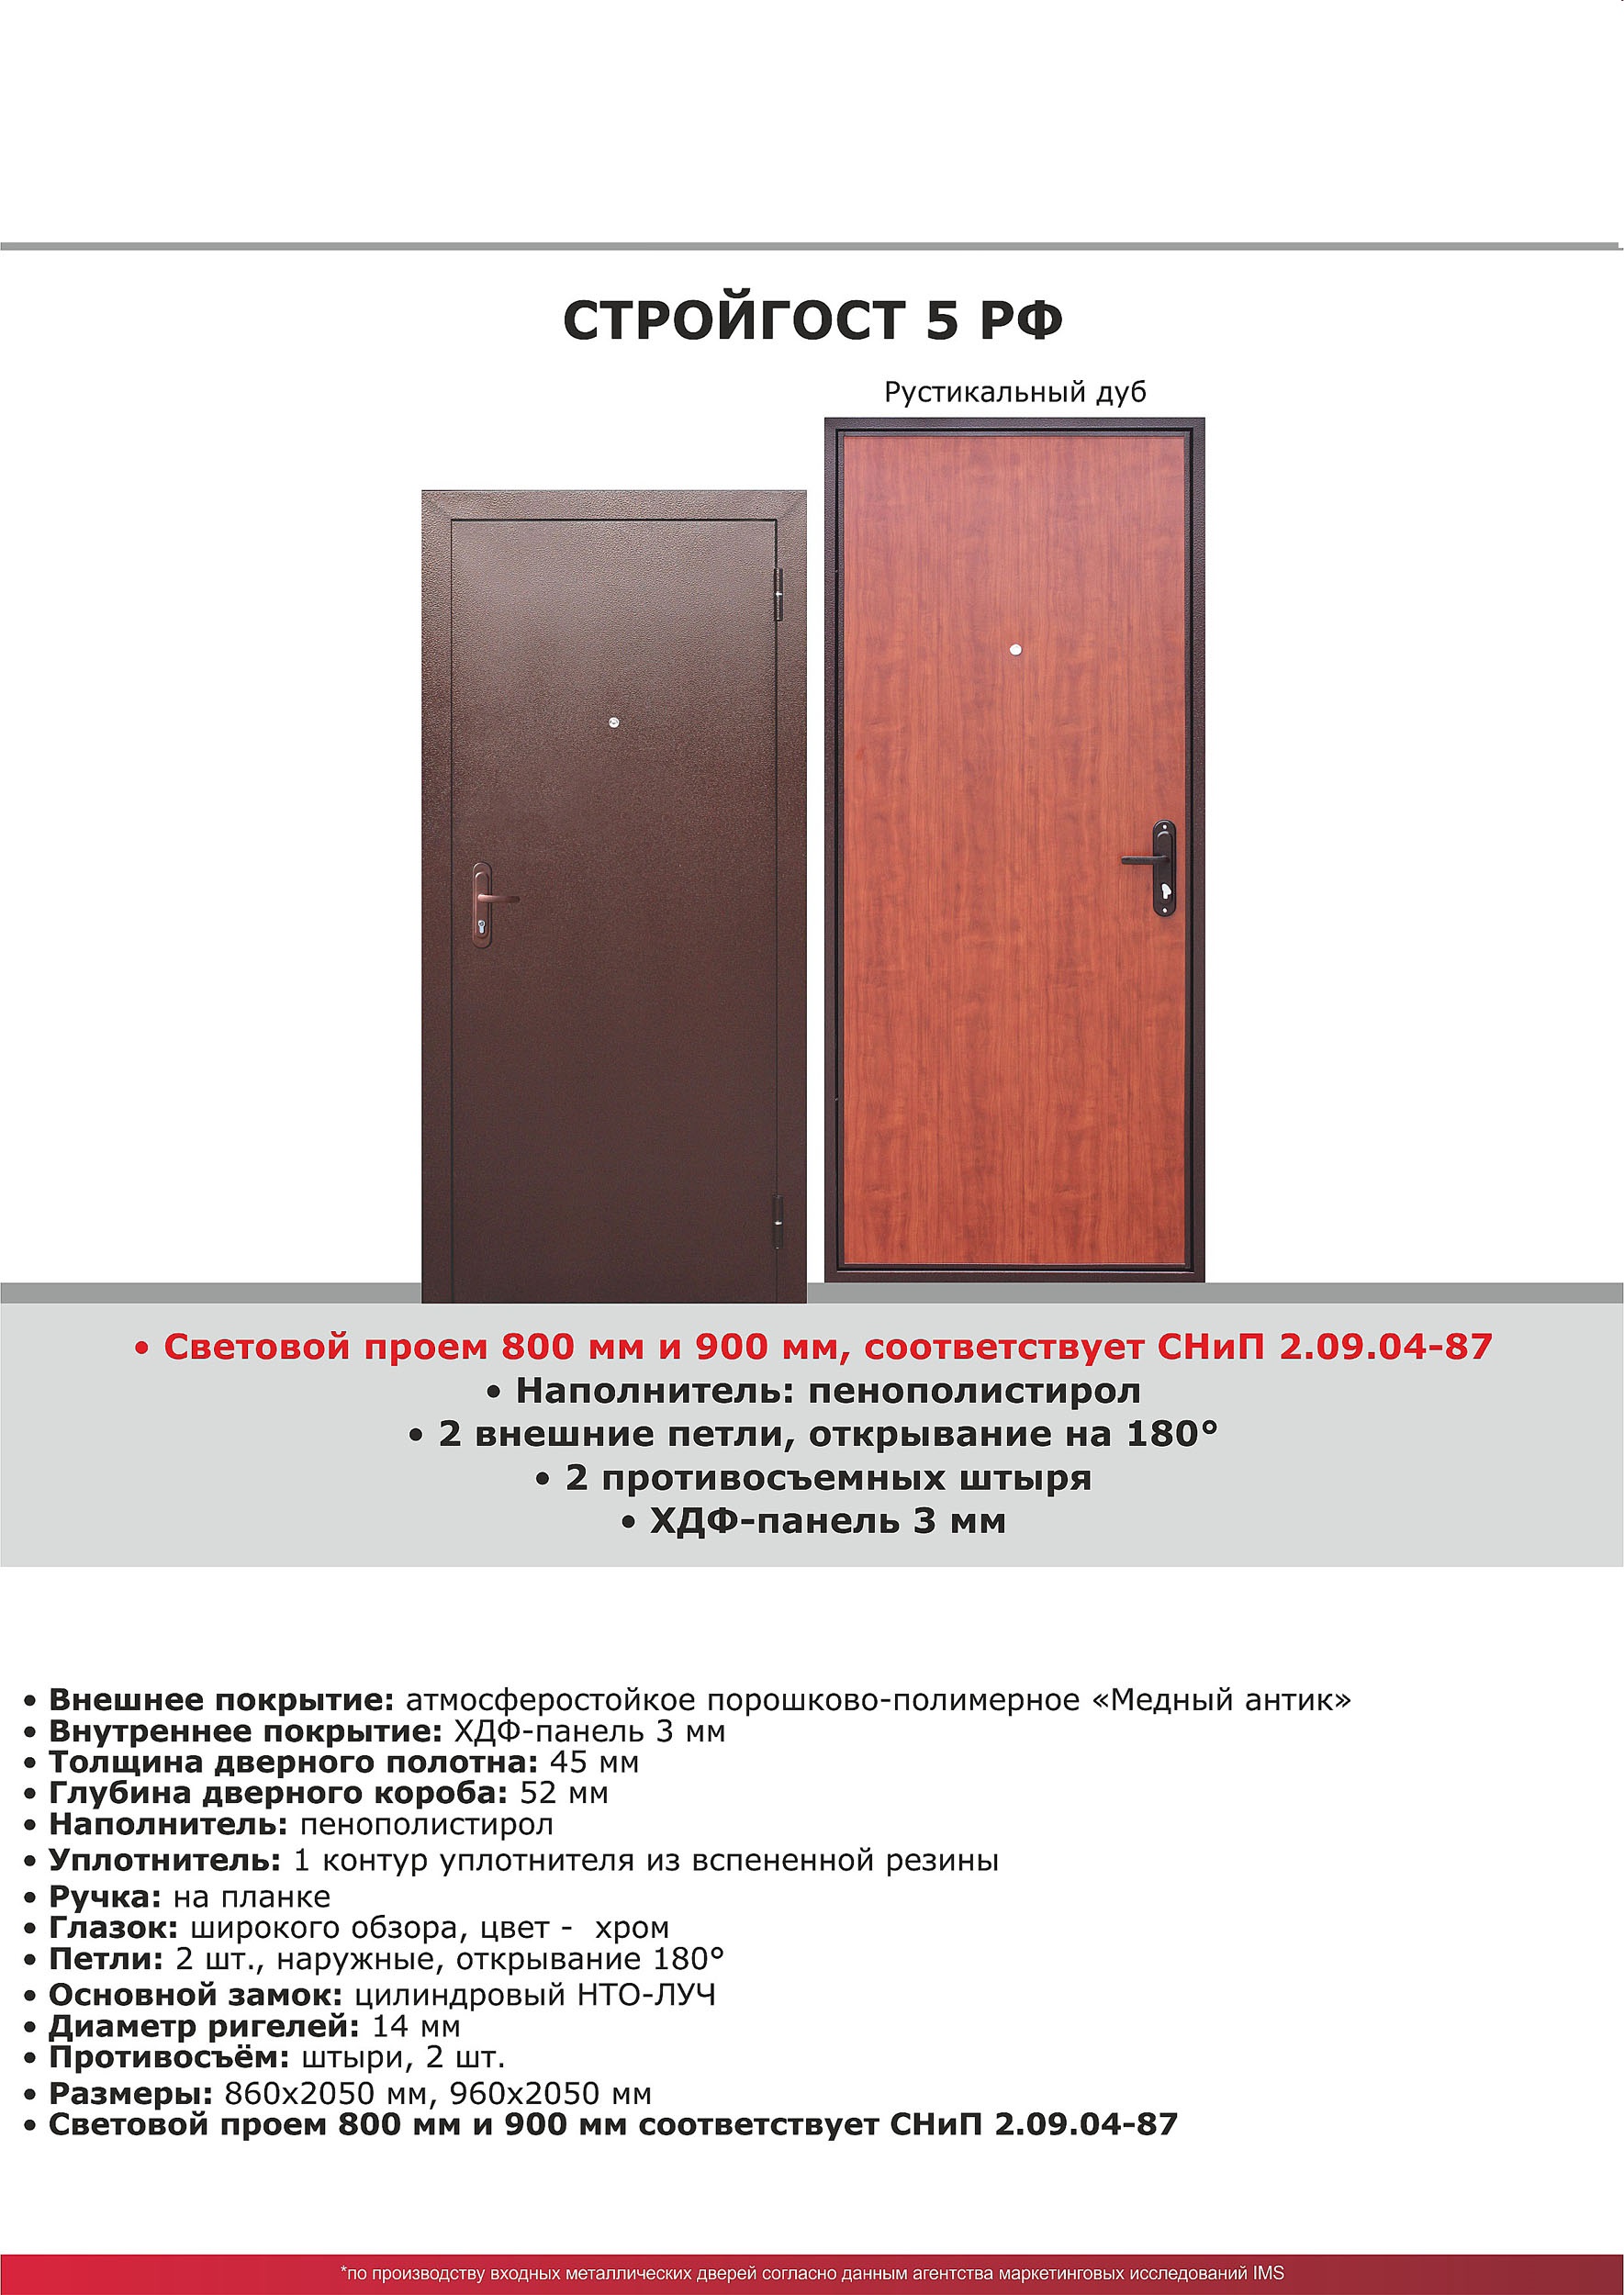 Входная дверь Стройгост 5 РФ Рустикальный дуб 2050*860  прав УТ000016390